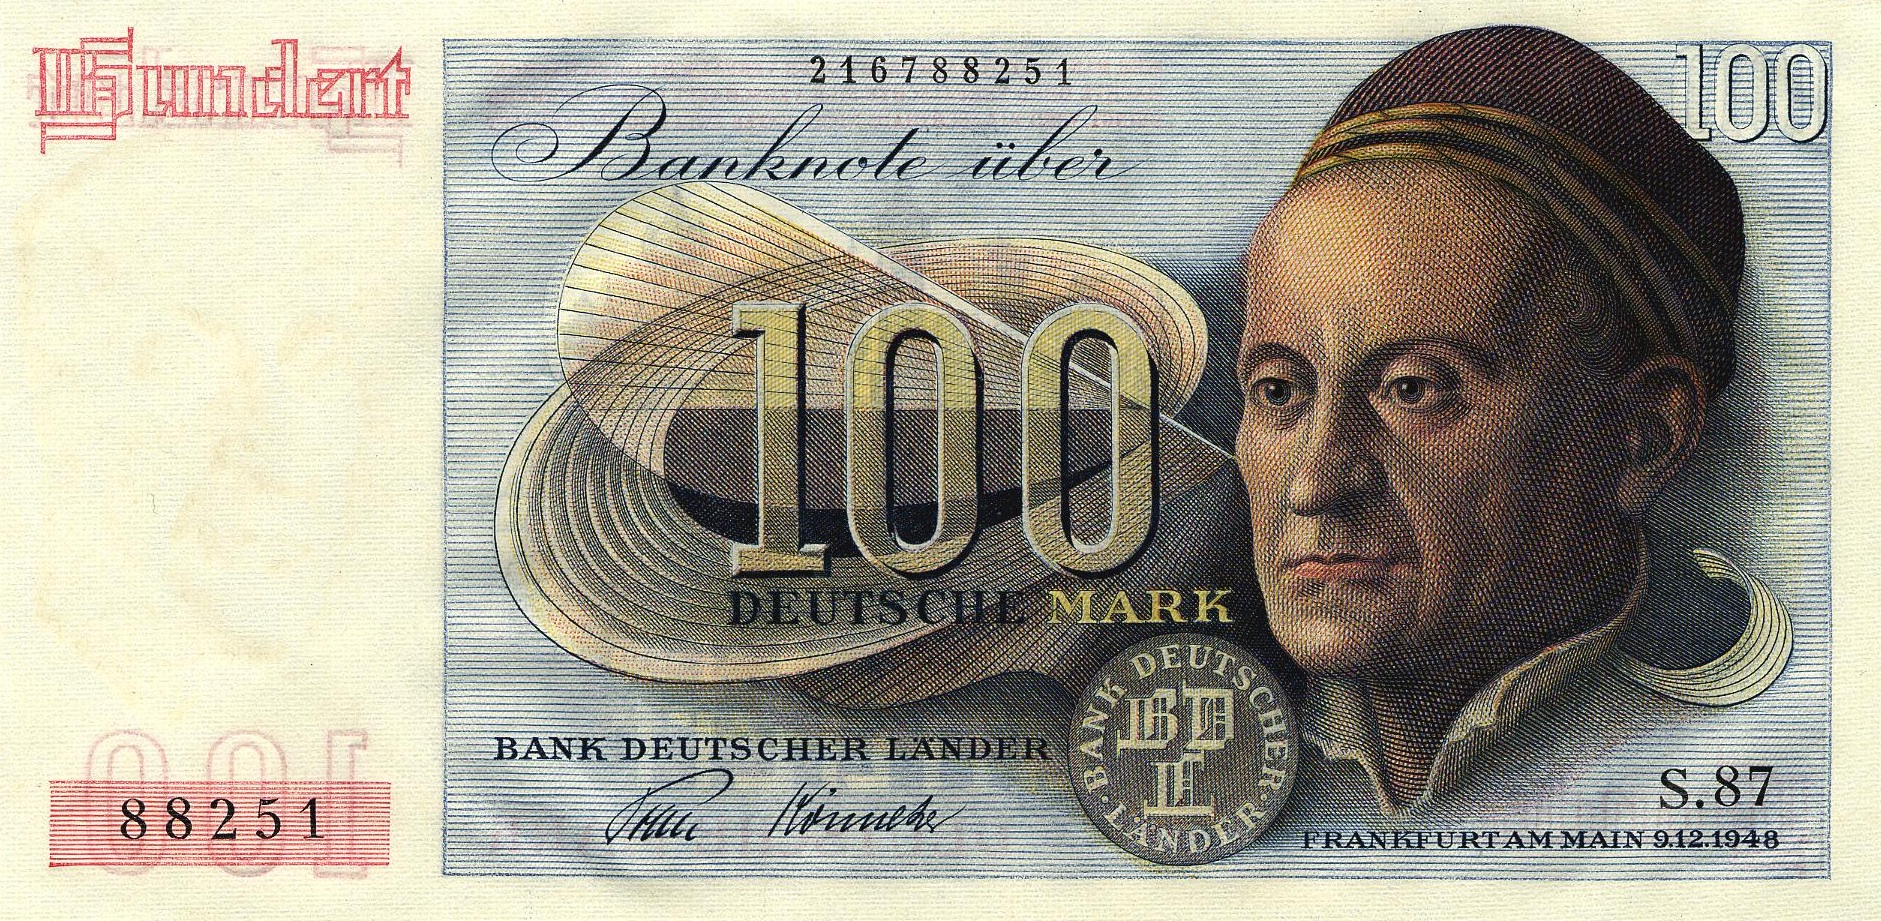 The 100 Serie Deutsch